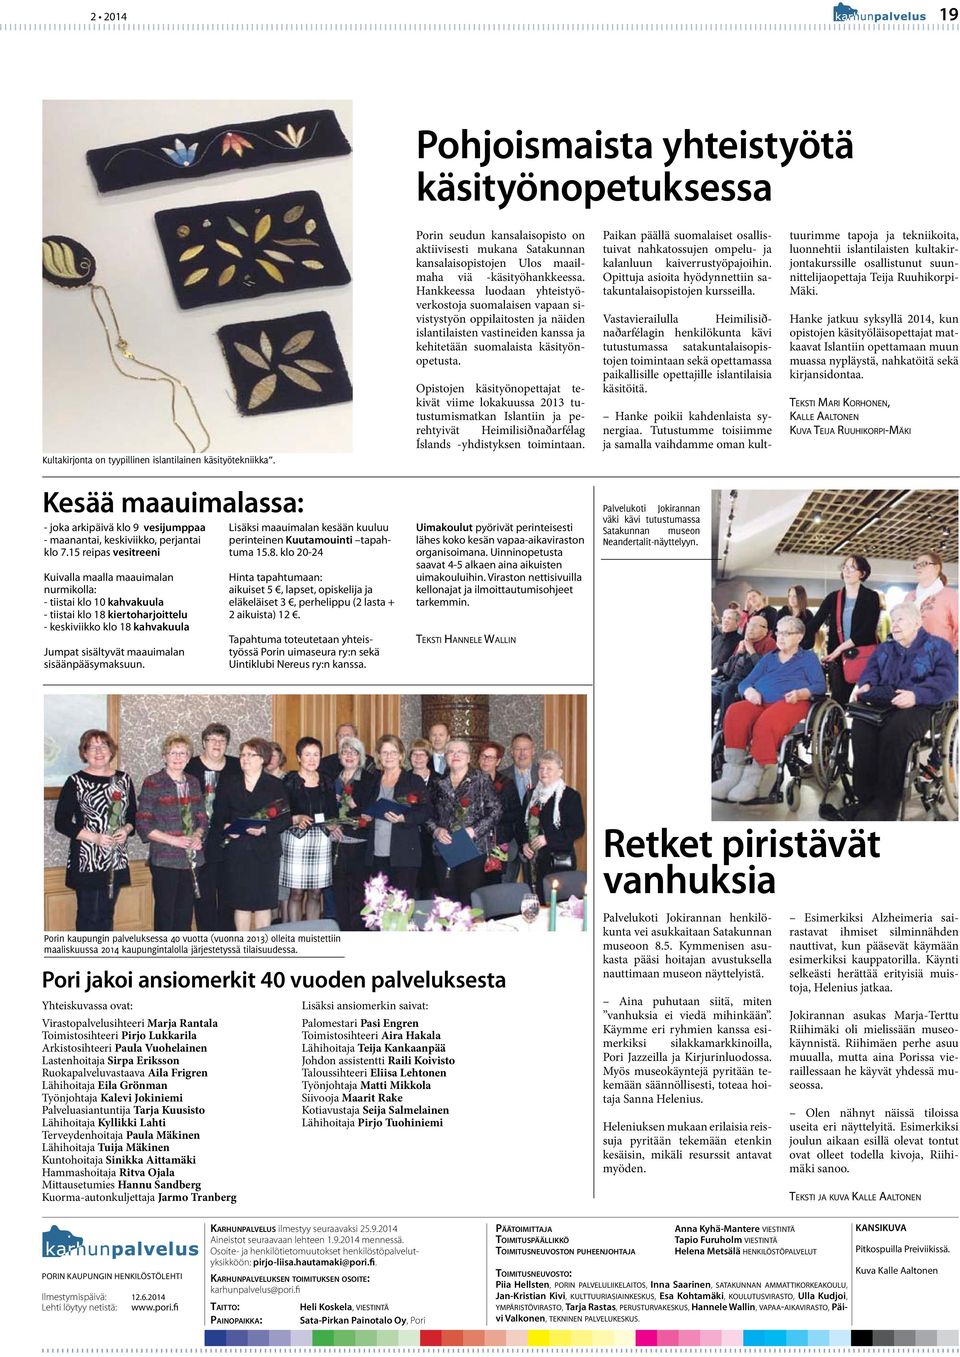 Hankkeessa luodaan yhteistyöverkostoja suomalaisen vapaan sivistystyön oppilaitosten ja näiden islantilaisten vastineiden kanssa ja kehitetään suomalaista käsityönopetusta.